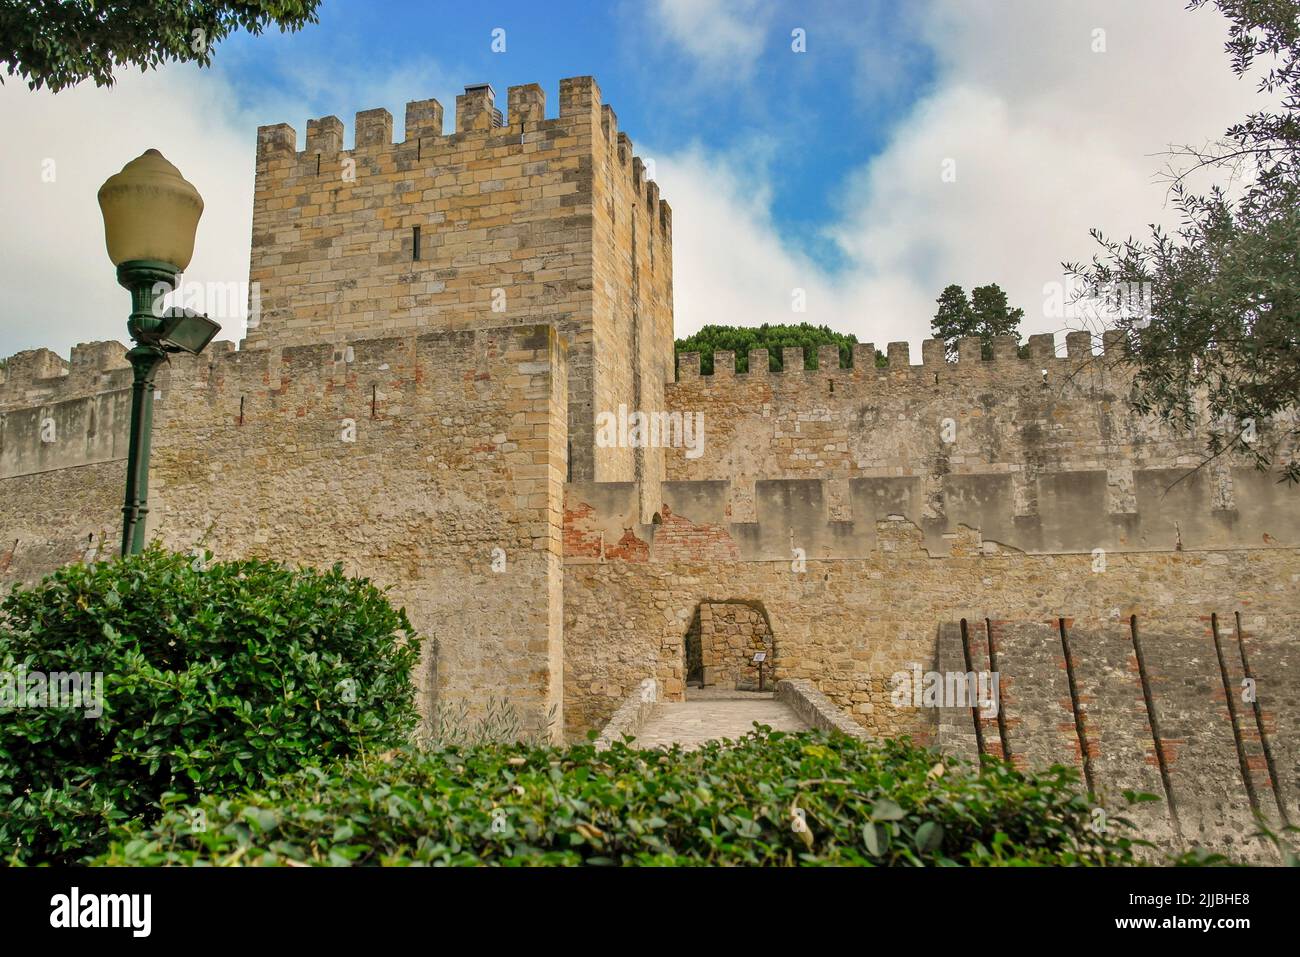 The Saint Georges Castle, Lisbon, Portugal Stock Photo